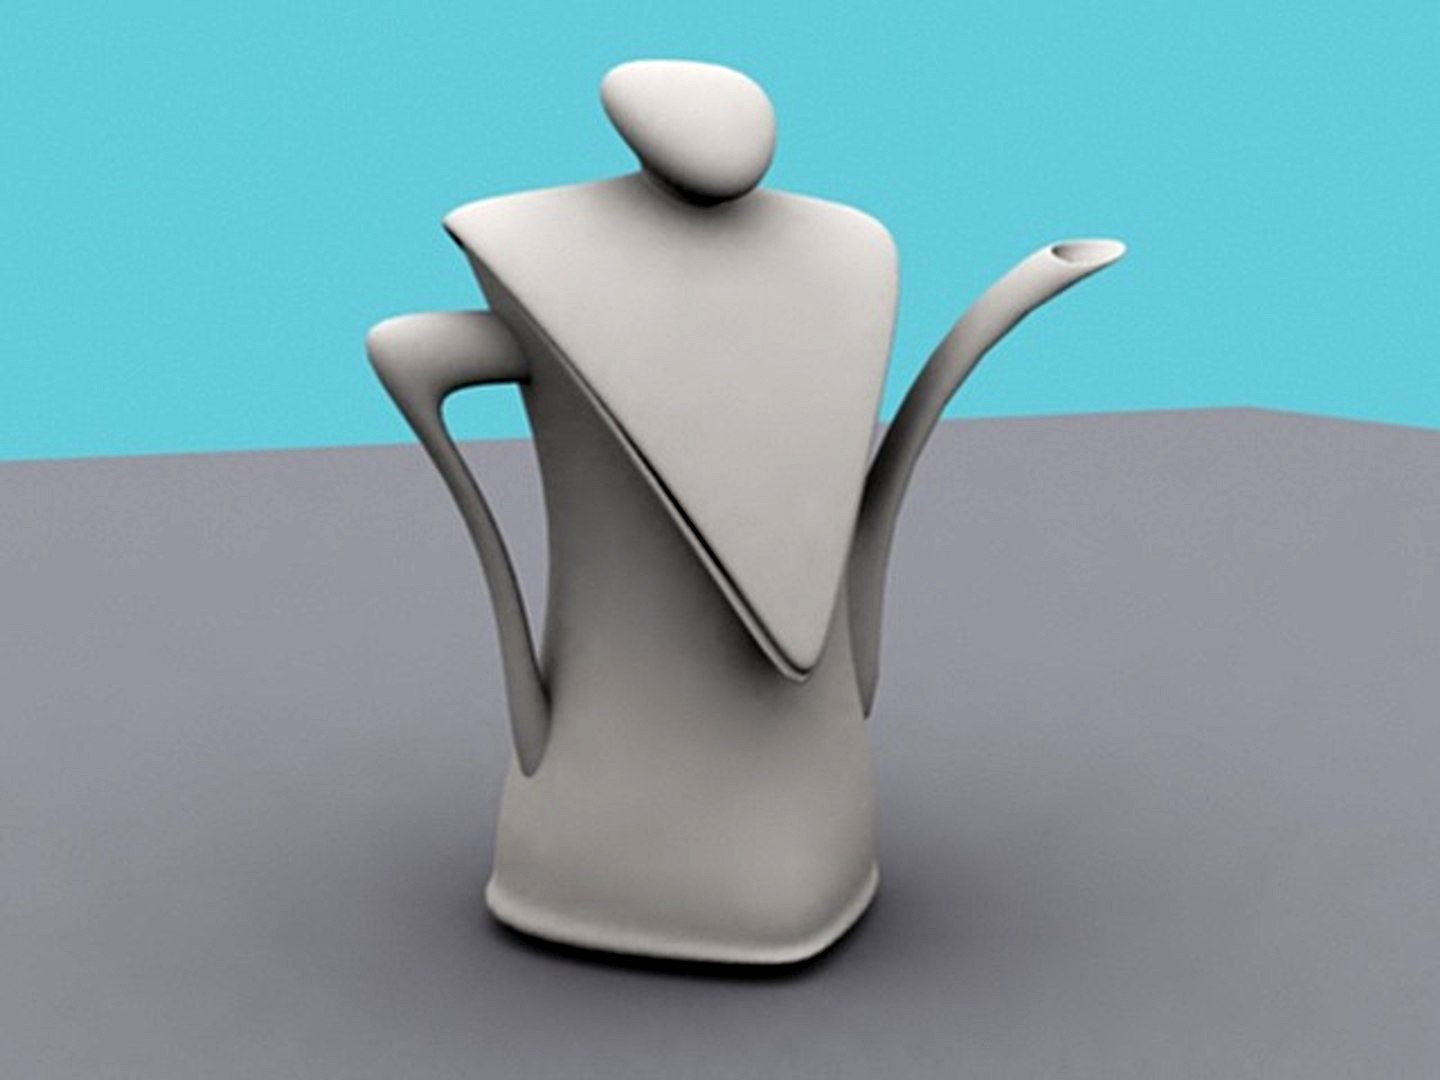 Teapot (Morphable and Animatable)